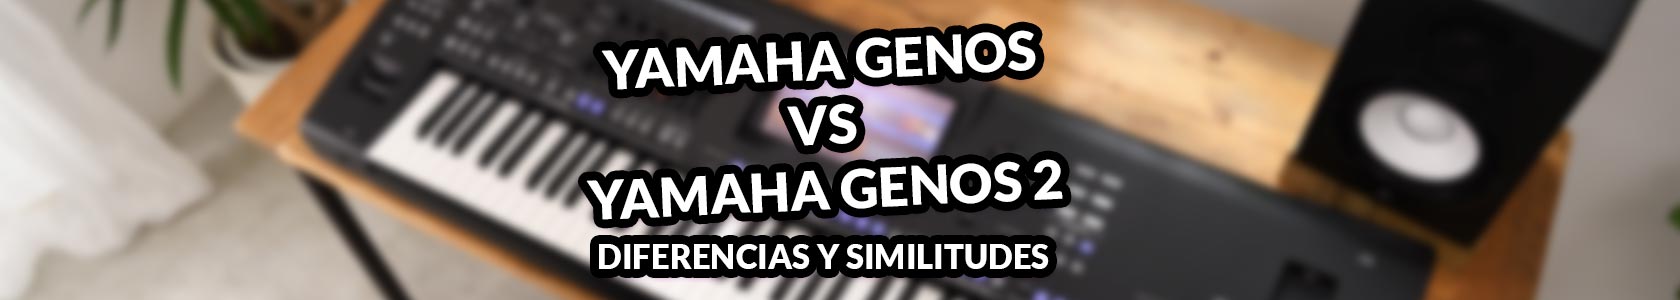 Descubre las diferencias entre el Yamaha Genos y el yamaha Genos 2